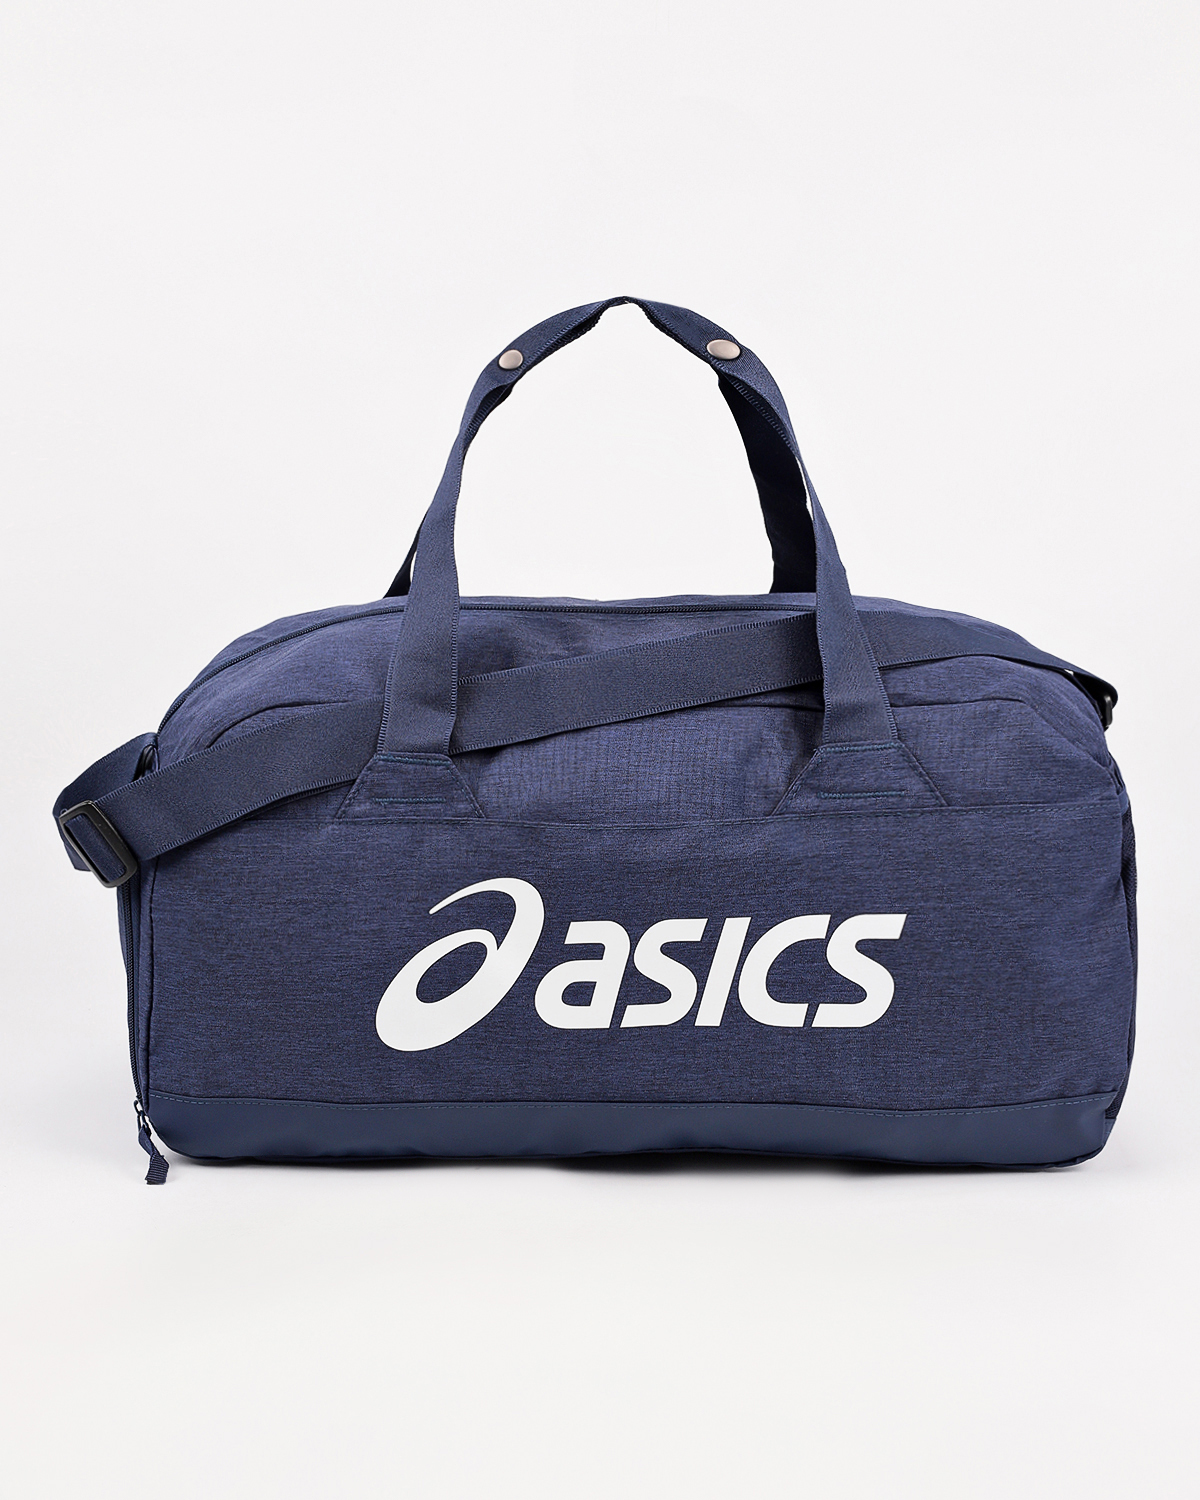 Озон сумка спортивная. Спортивная сумка асикс асикс. Спортивные сумки асикс мужские. Сумка ASICS спортивная синяя. Сумки спортивные Асис чемпион.